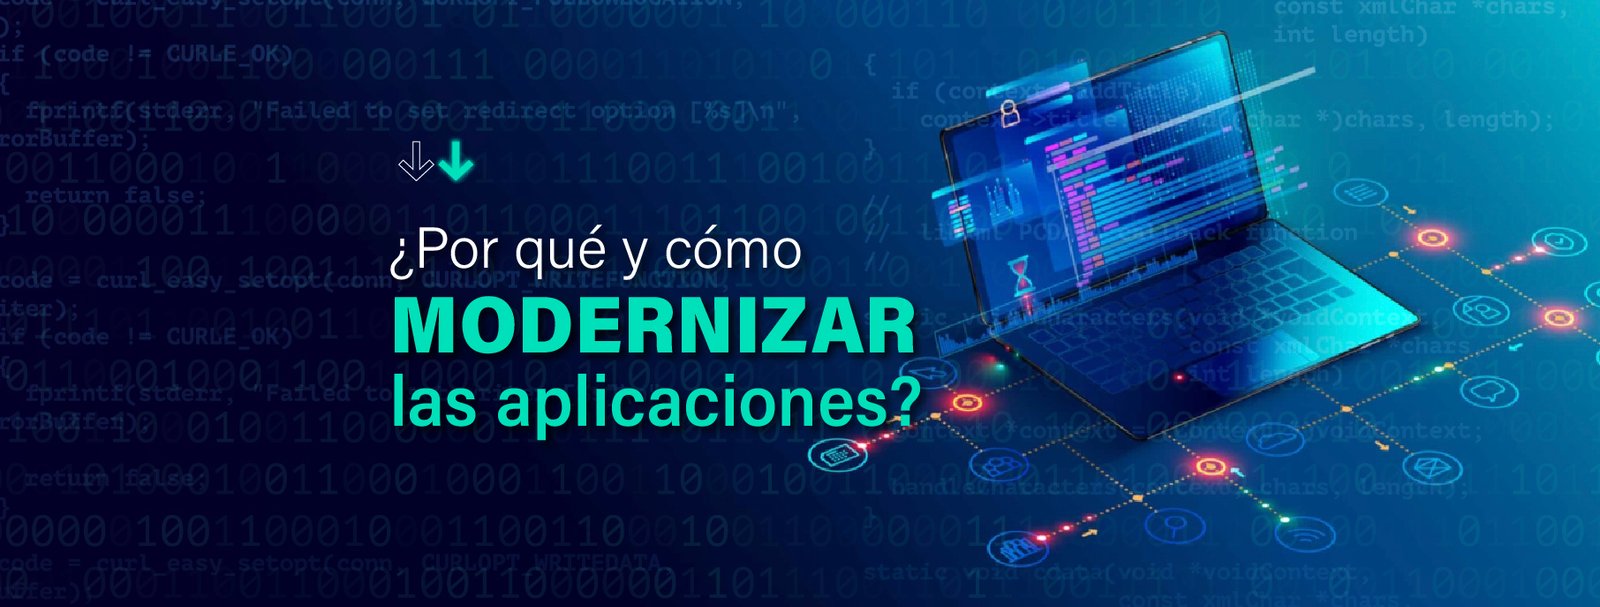 Modernización de aplicaciones: ¿cómo y por qué? - IT Patagonia